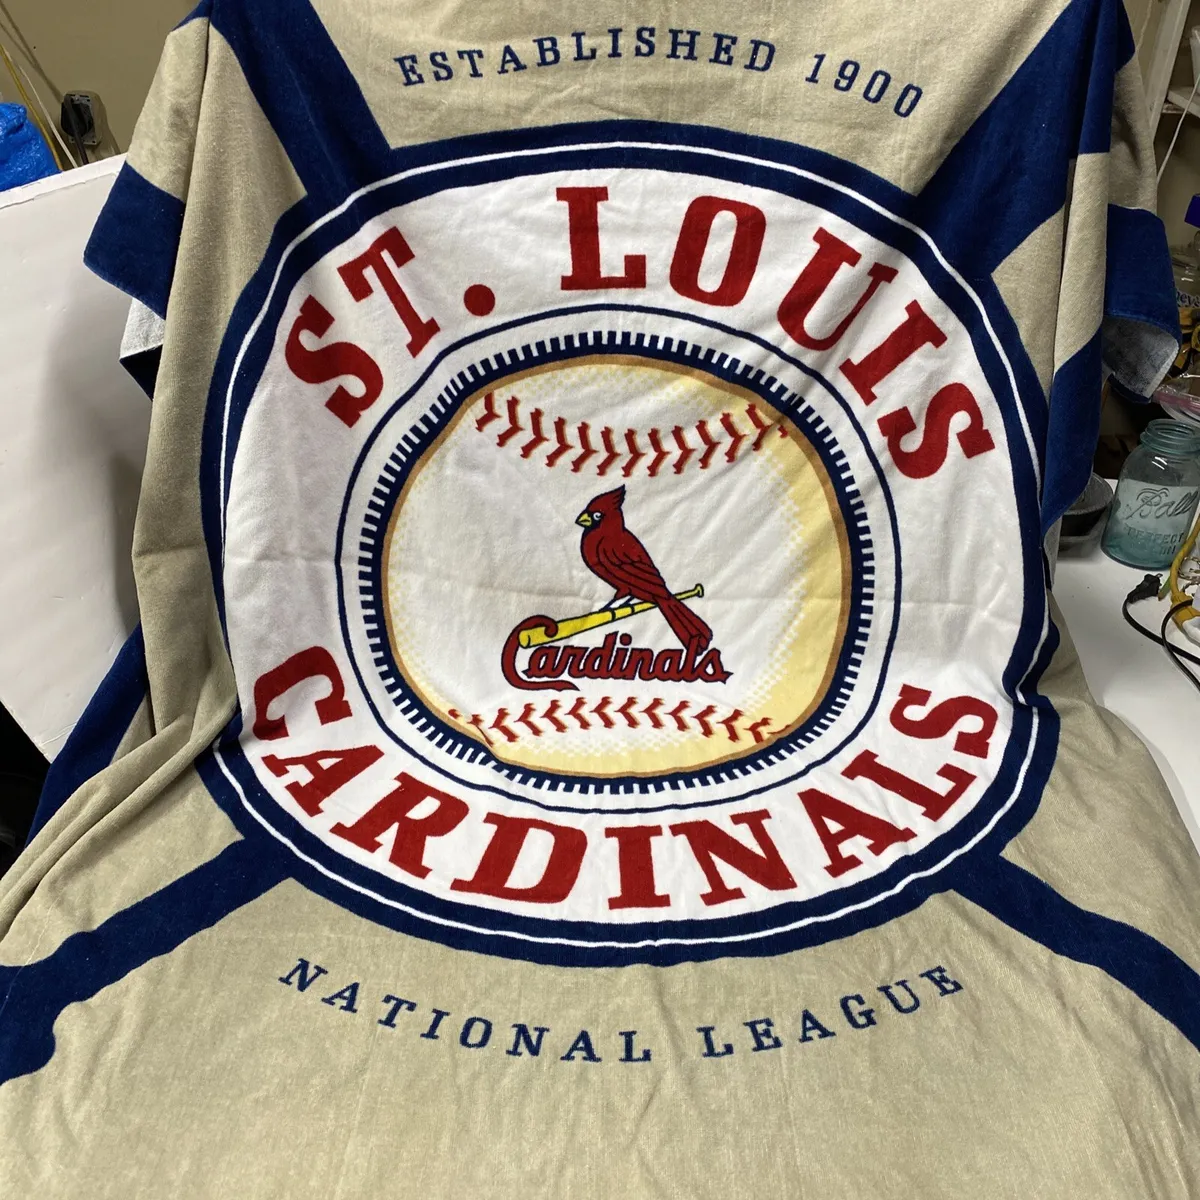 St. Louis Cardinals Beach Towel For Sale